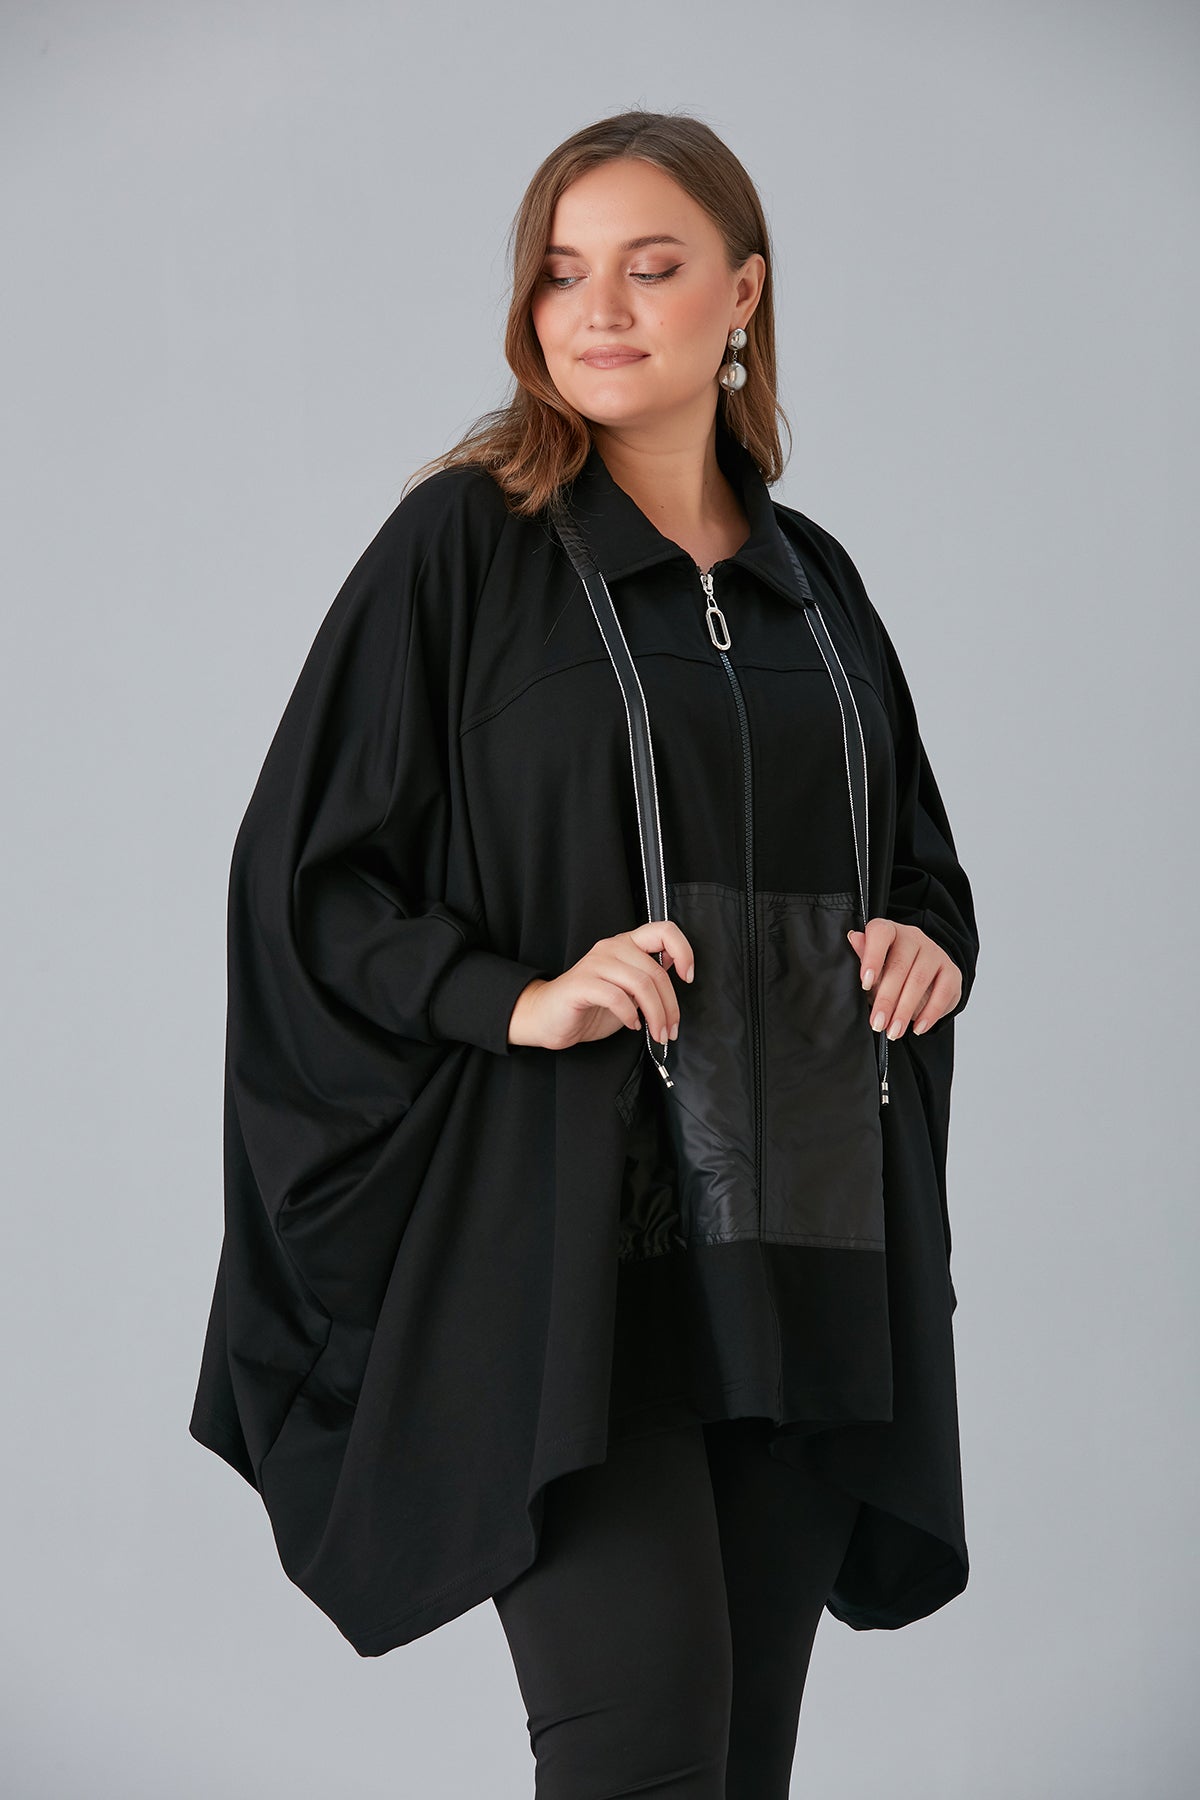 Γυναικείο poncho με φερμουάρ σε μεγάλα μεγέθη- Μαύρο